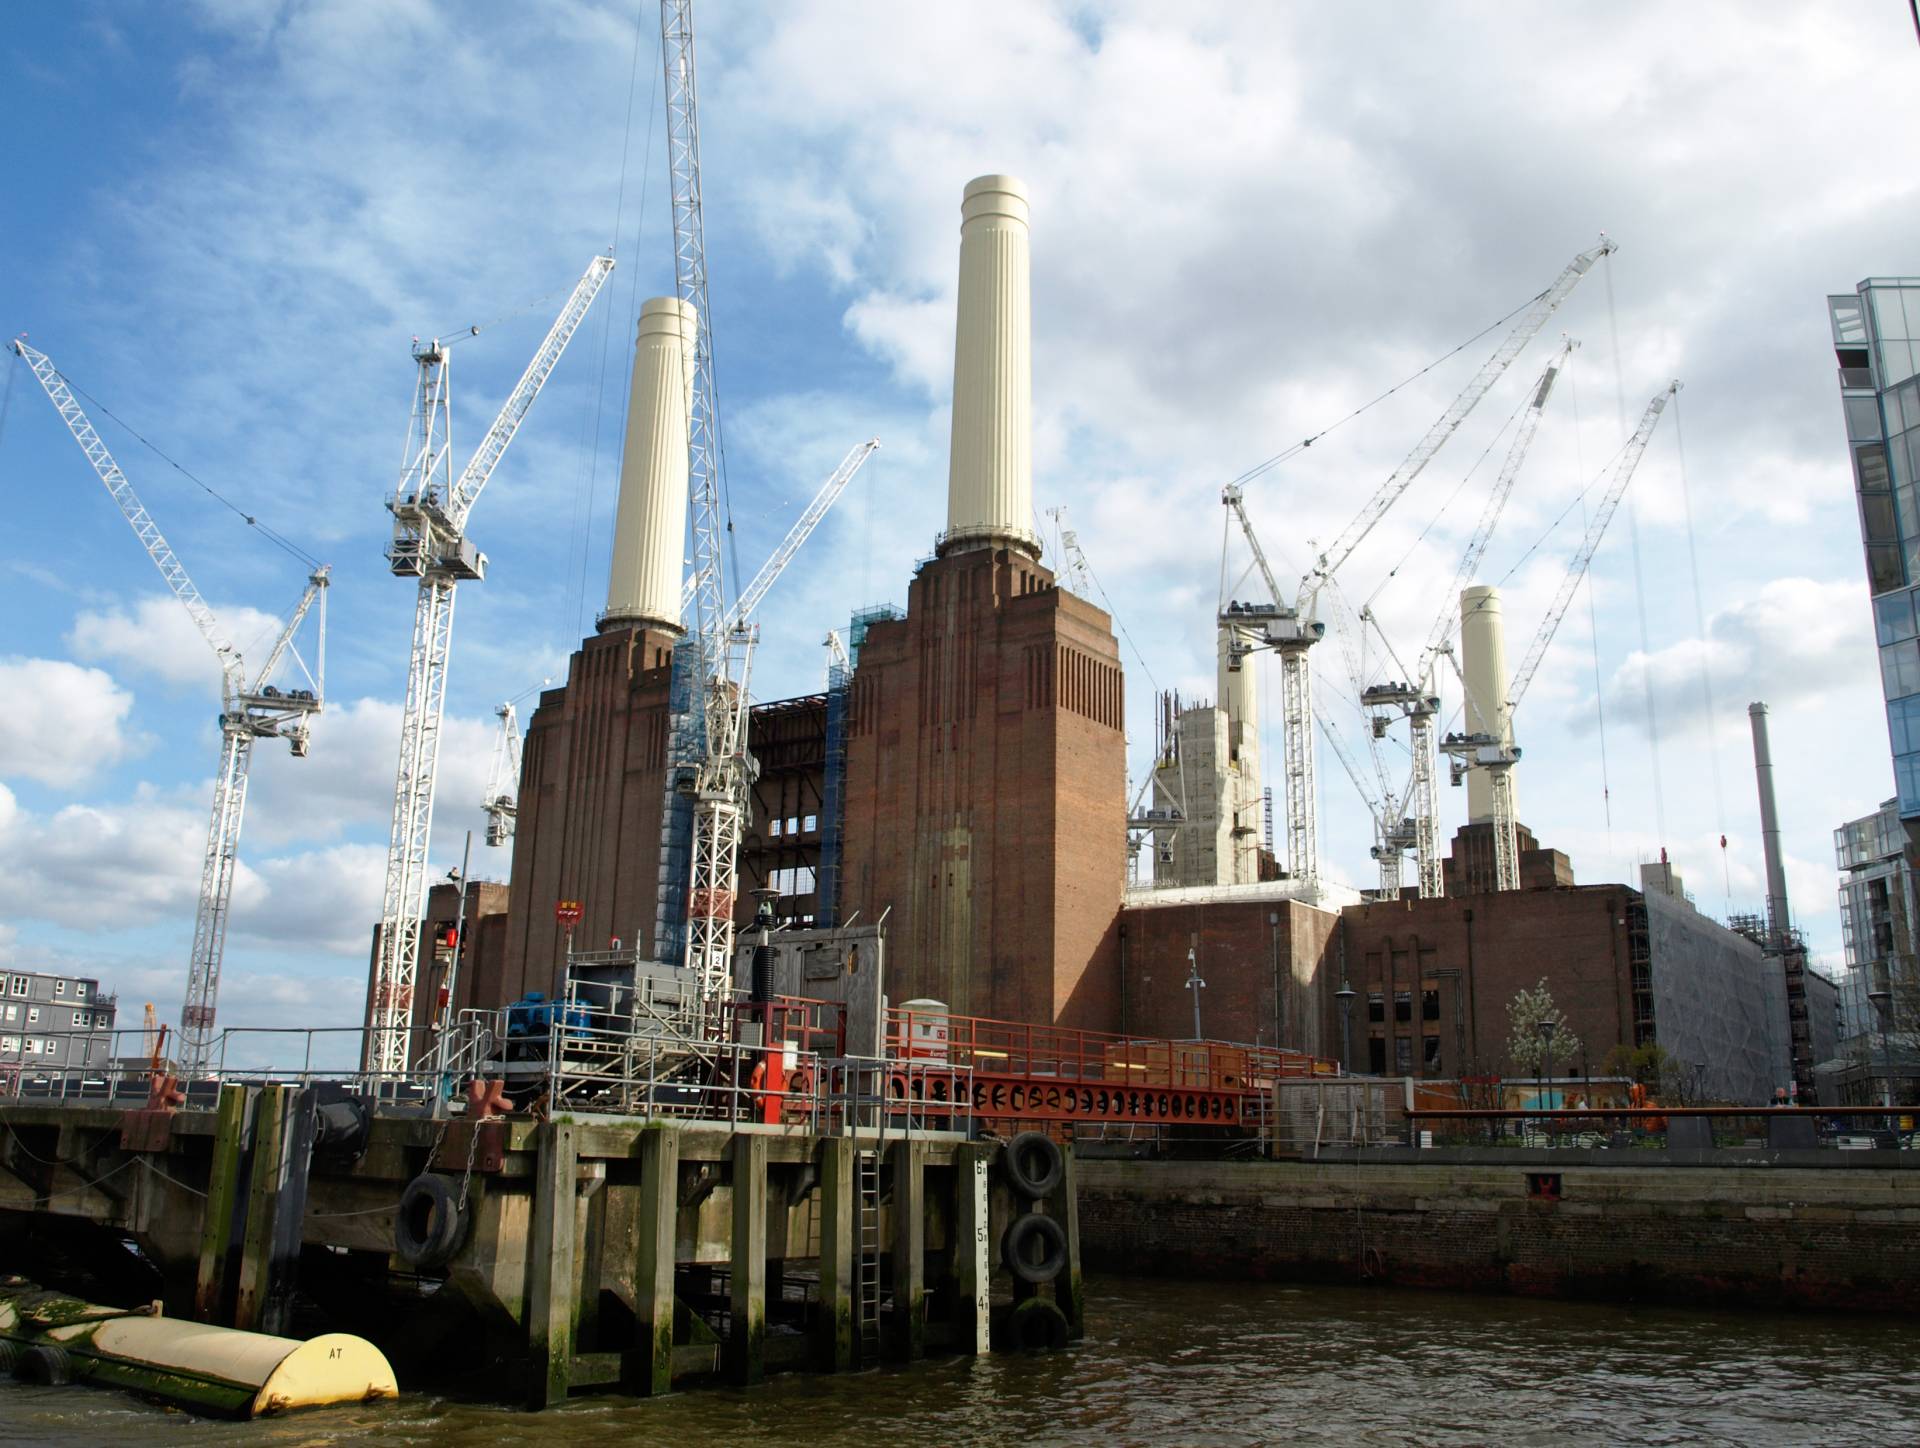 Under Construction: Battersea Power Station als Herzstück eines neuen Stadtteils.